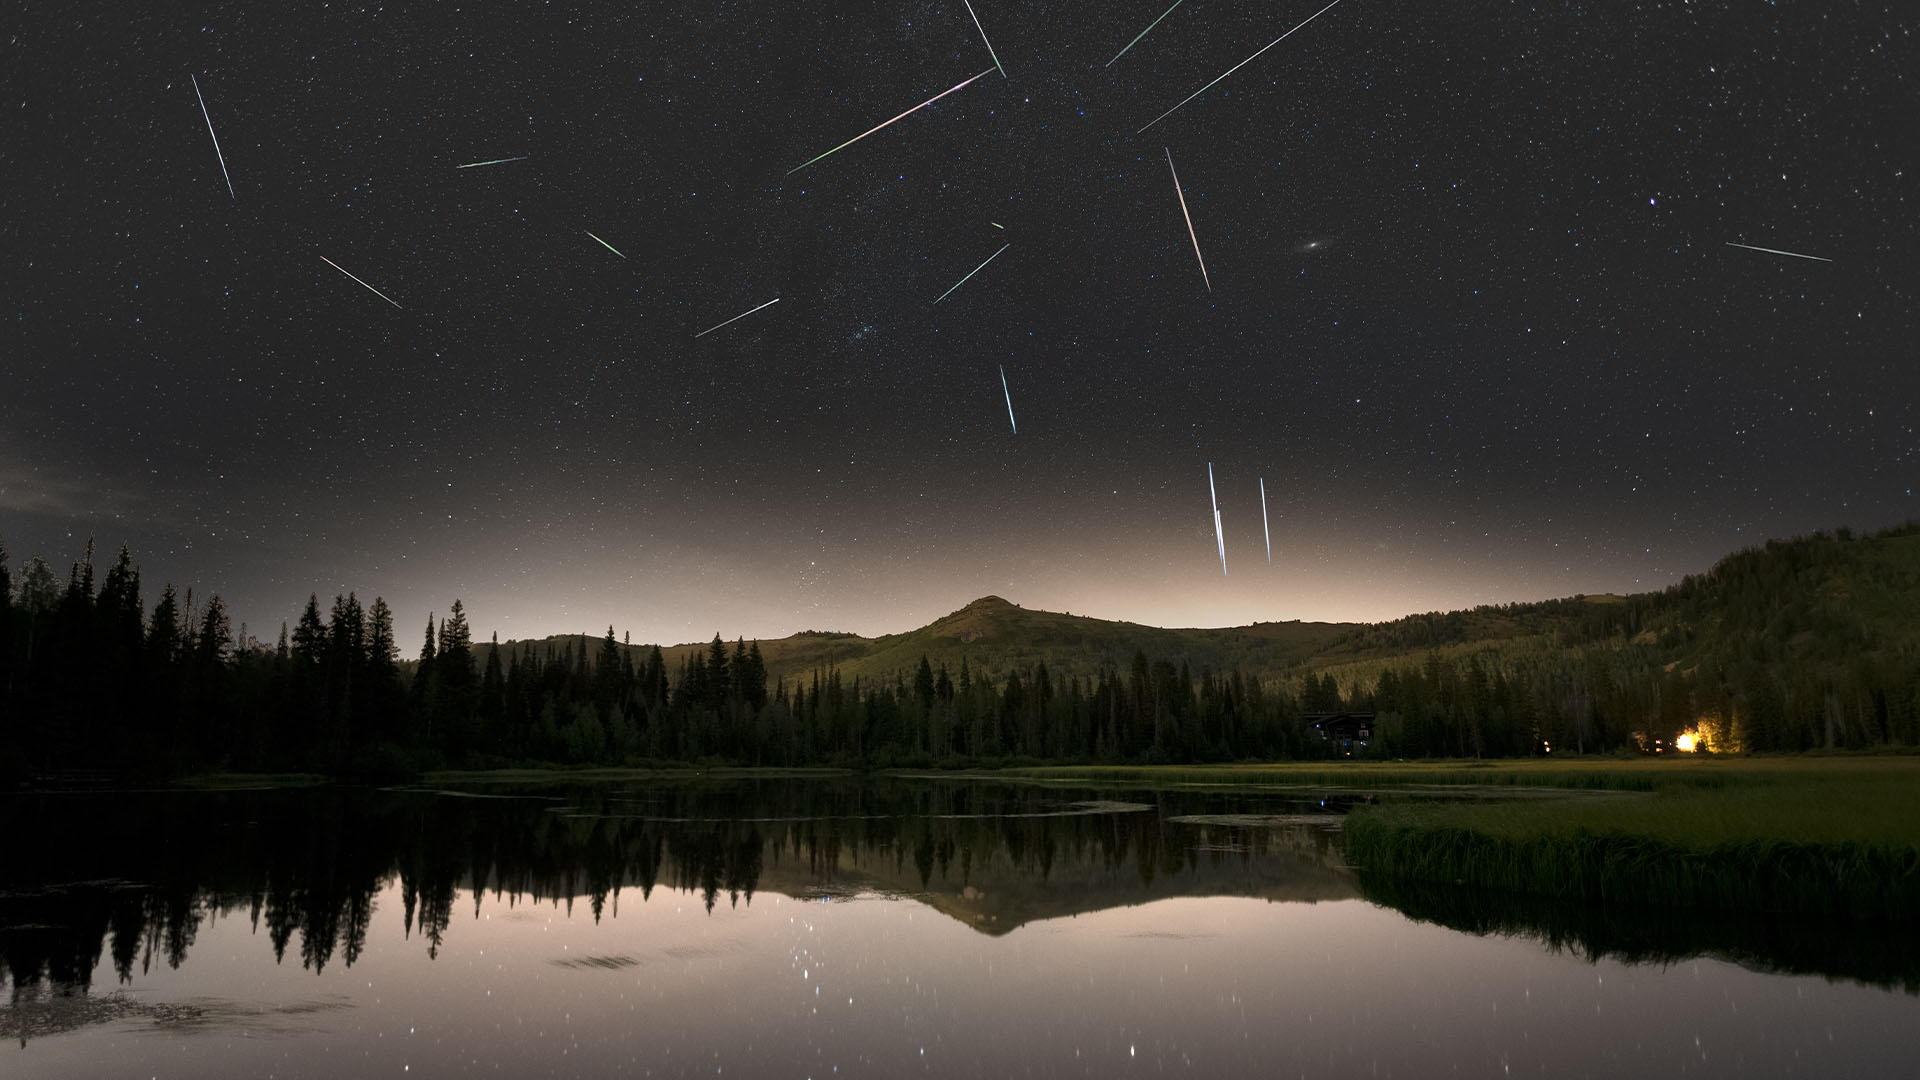 Eta Aquariid meteor shower in a scenic view of lake against sky at night, Salt Lake City, Utah, USA.